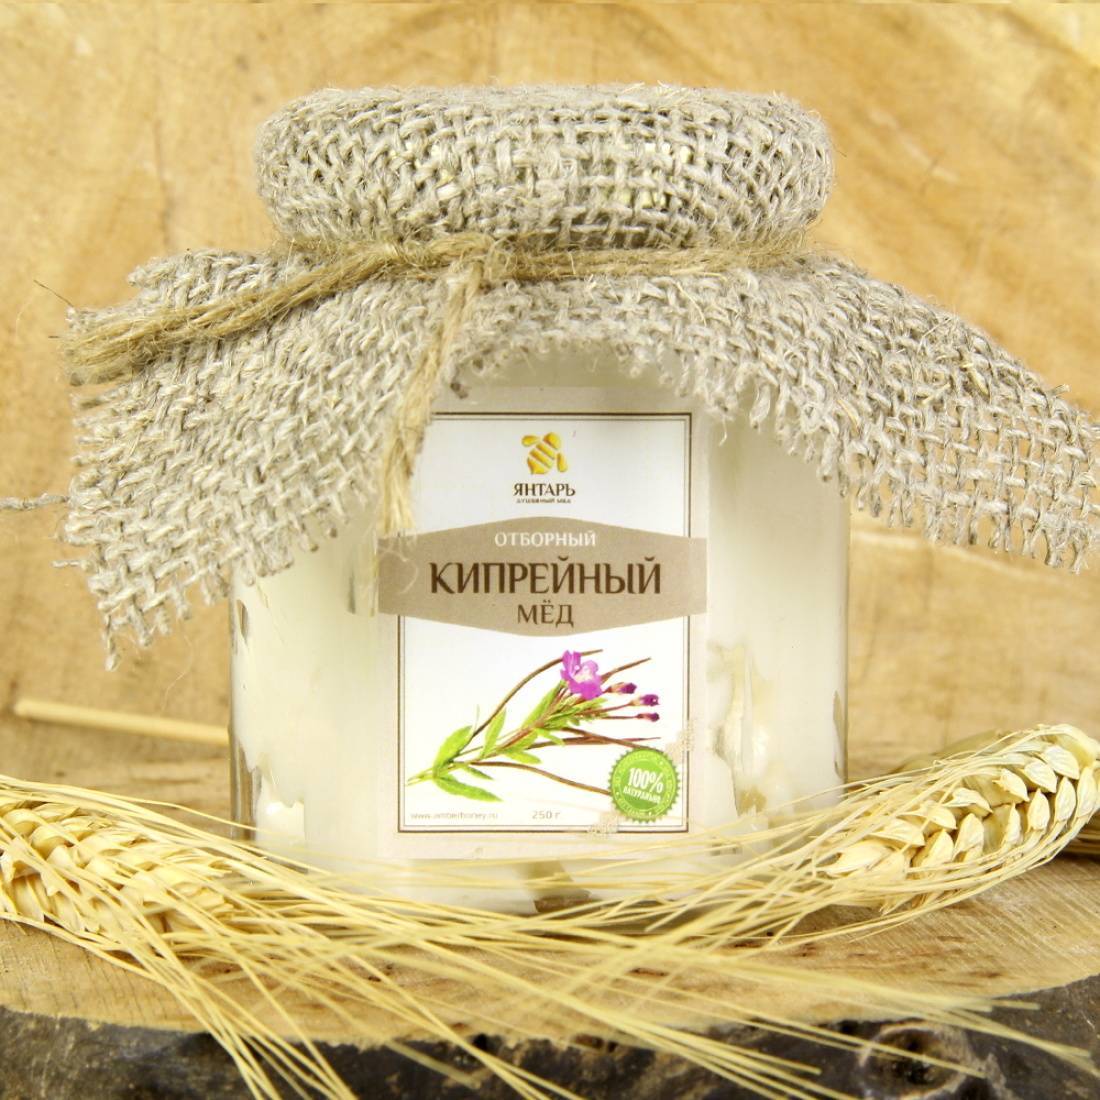 Кипрейный мед (из цветков иван-чая): полезные и лечебные свойства